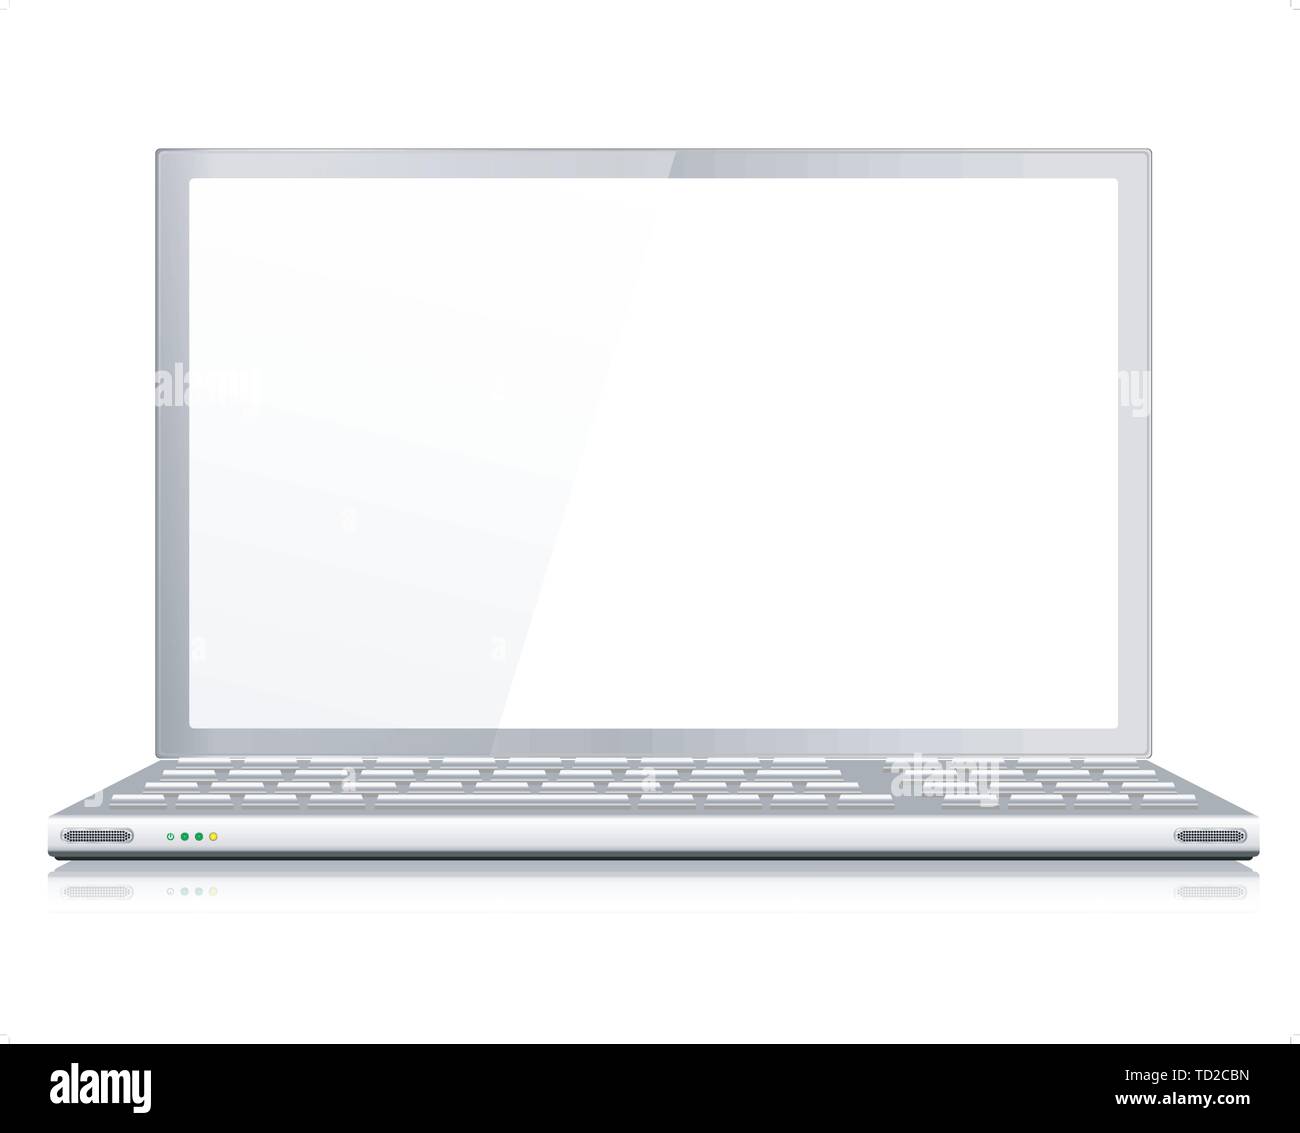 Realistische Laptop oder Notebook in Silber - Vektor mit gruppierten Elemente, benannte Layer und mit einem separaten Layer zu Ihrem eigenen Bild leicht nach La hinzufügen Stock Vektor